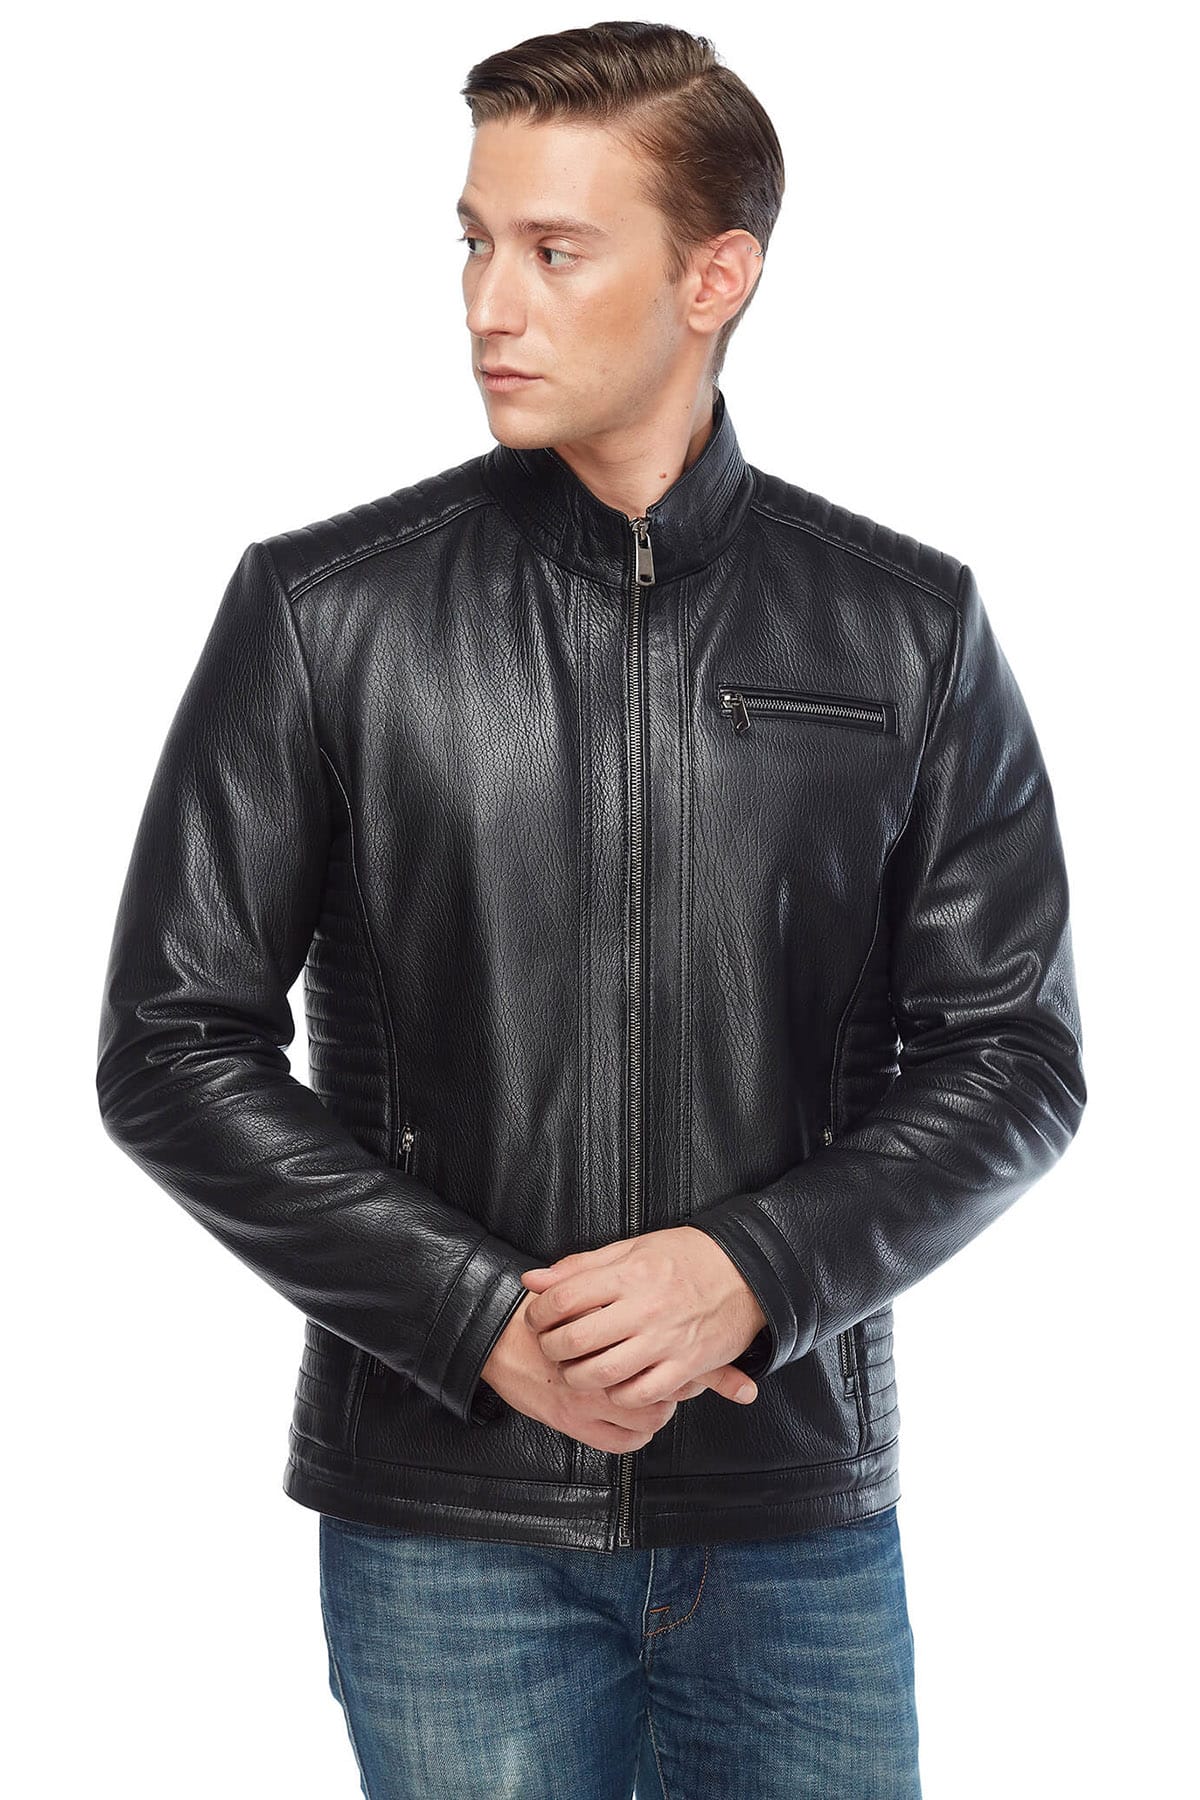 Jumbo Genuine Leather Men’s Coat in Black2